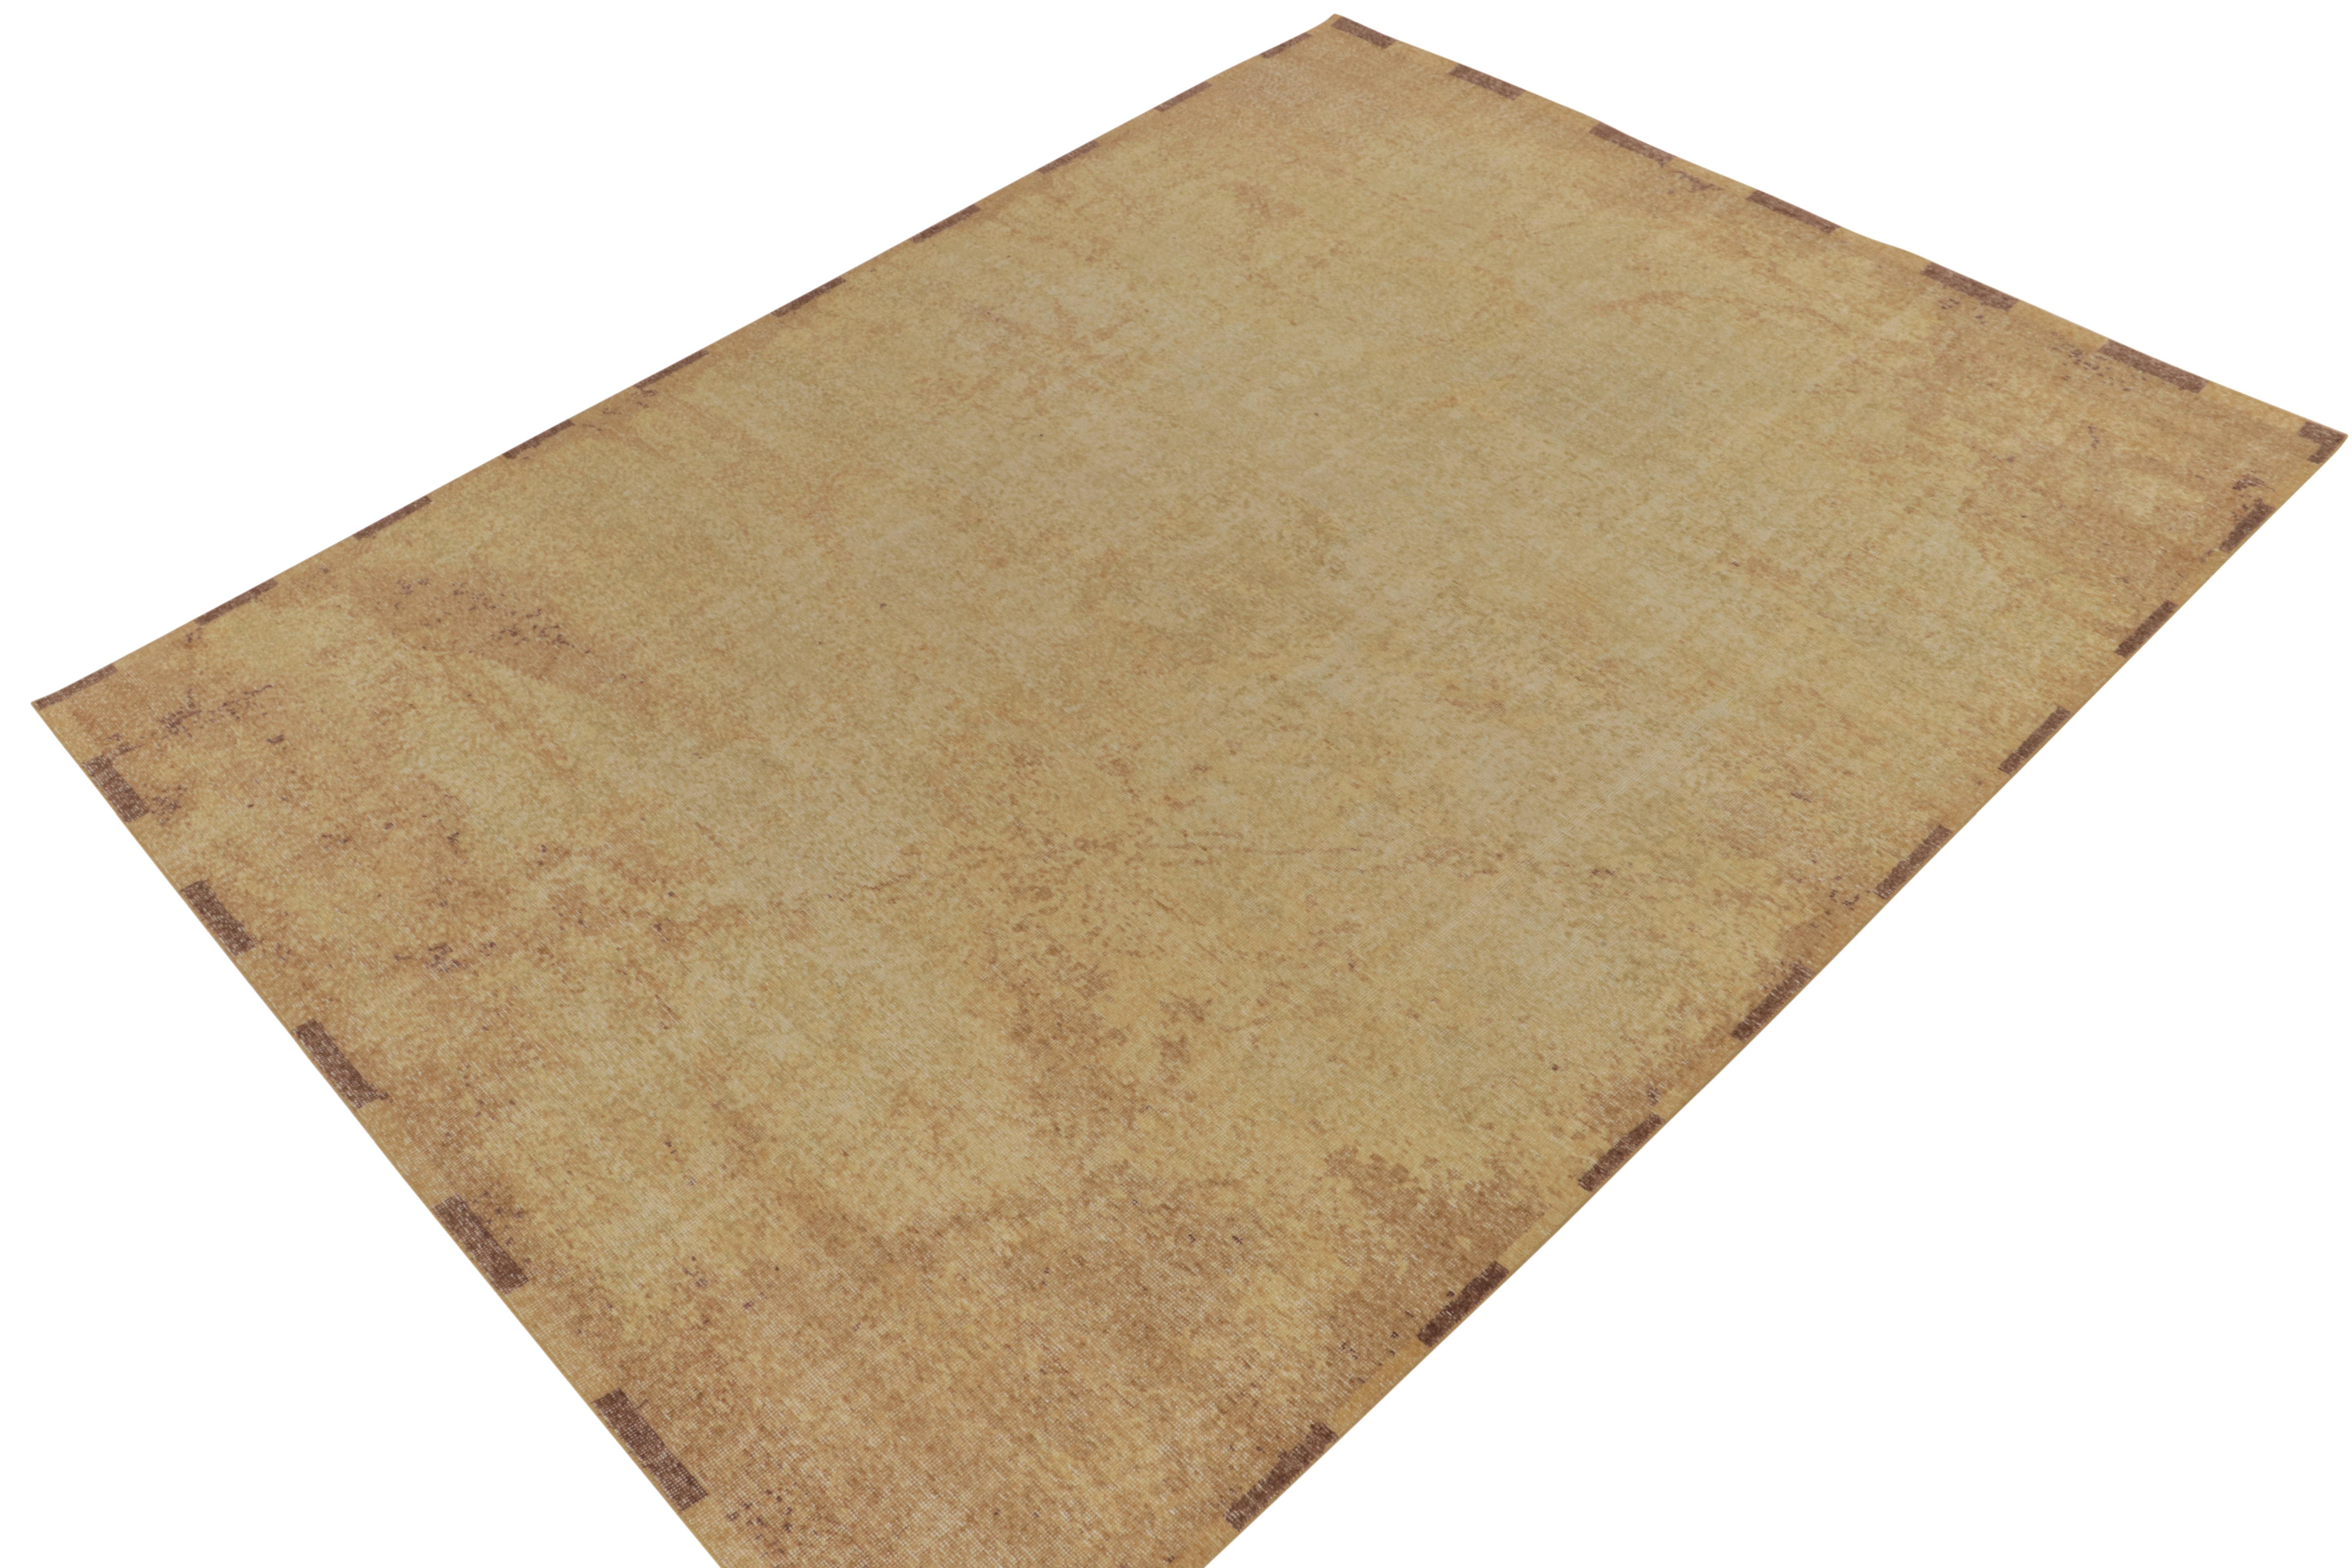 Issu de la collection Homage de Rug & Kilim, ce tapis abstrait 9x12 de style vieilli présente un jeu positif-négatif d'or et de brun somptueux qui donne une allure séduisante à cette célèbre ligne. Cette laine texturée à poils ras est un exemple de